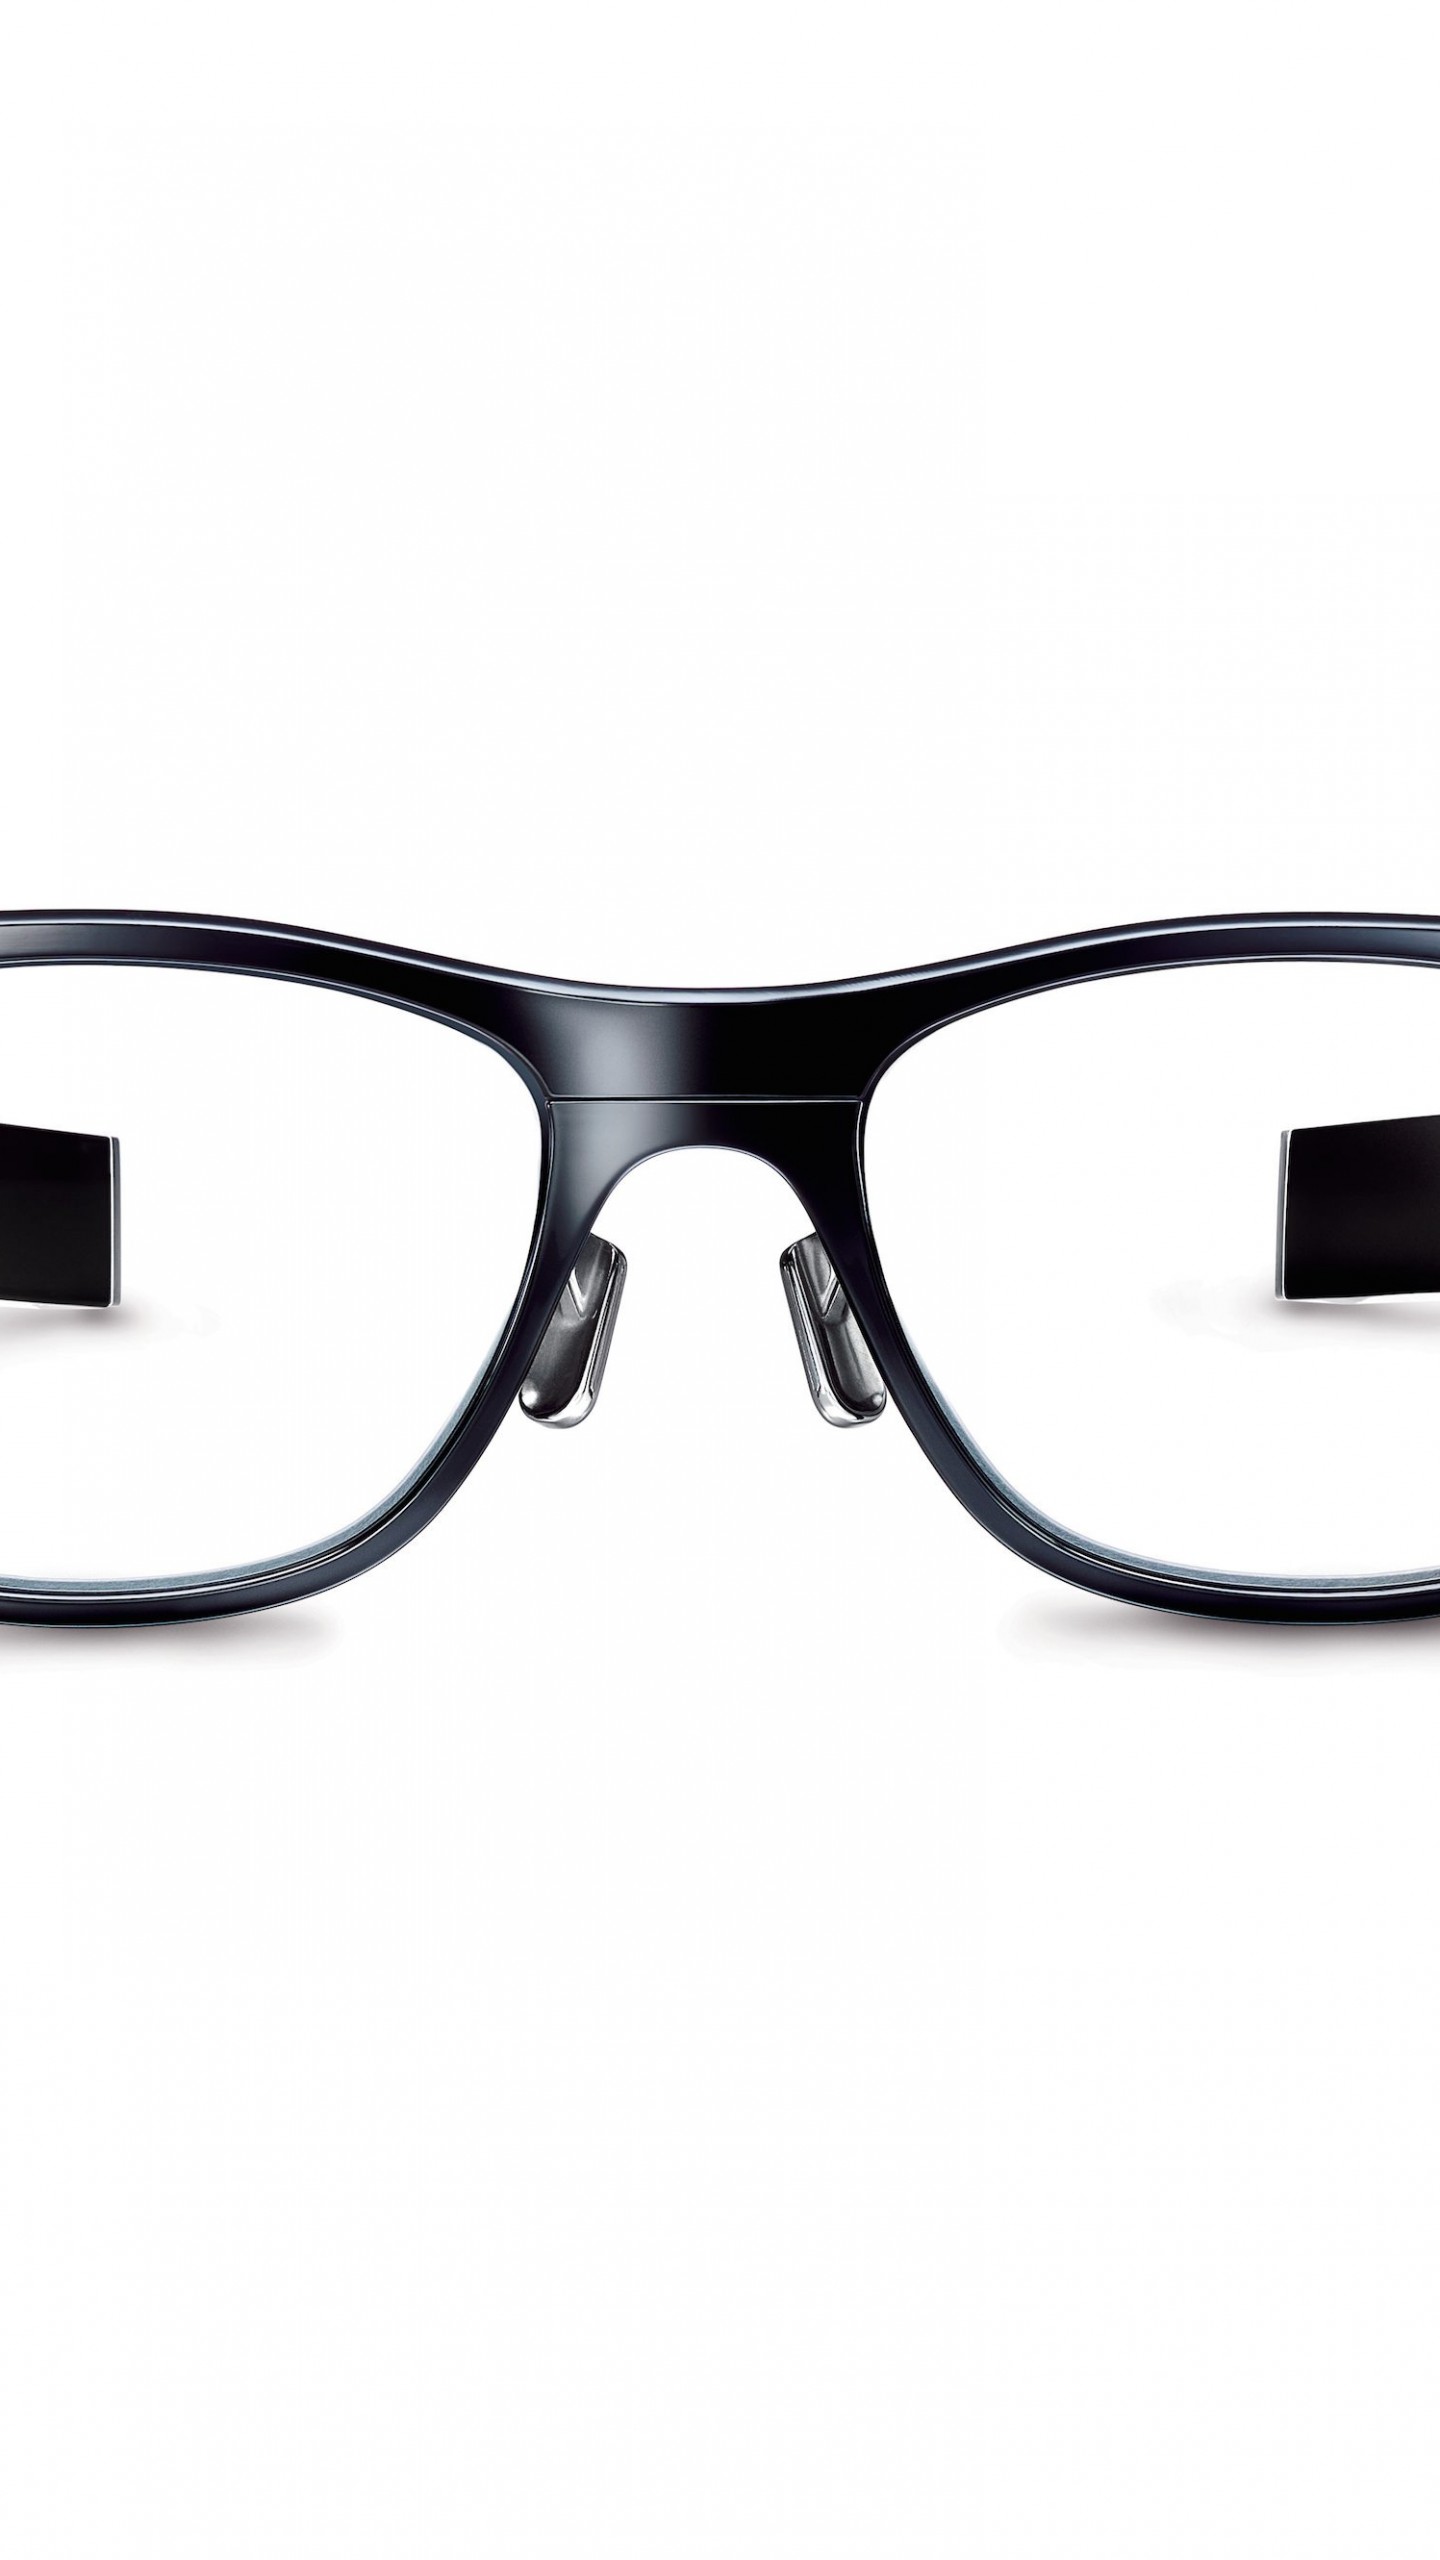 Jins Meme Smart Glasses Wallpaper for Google Nexus 6P